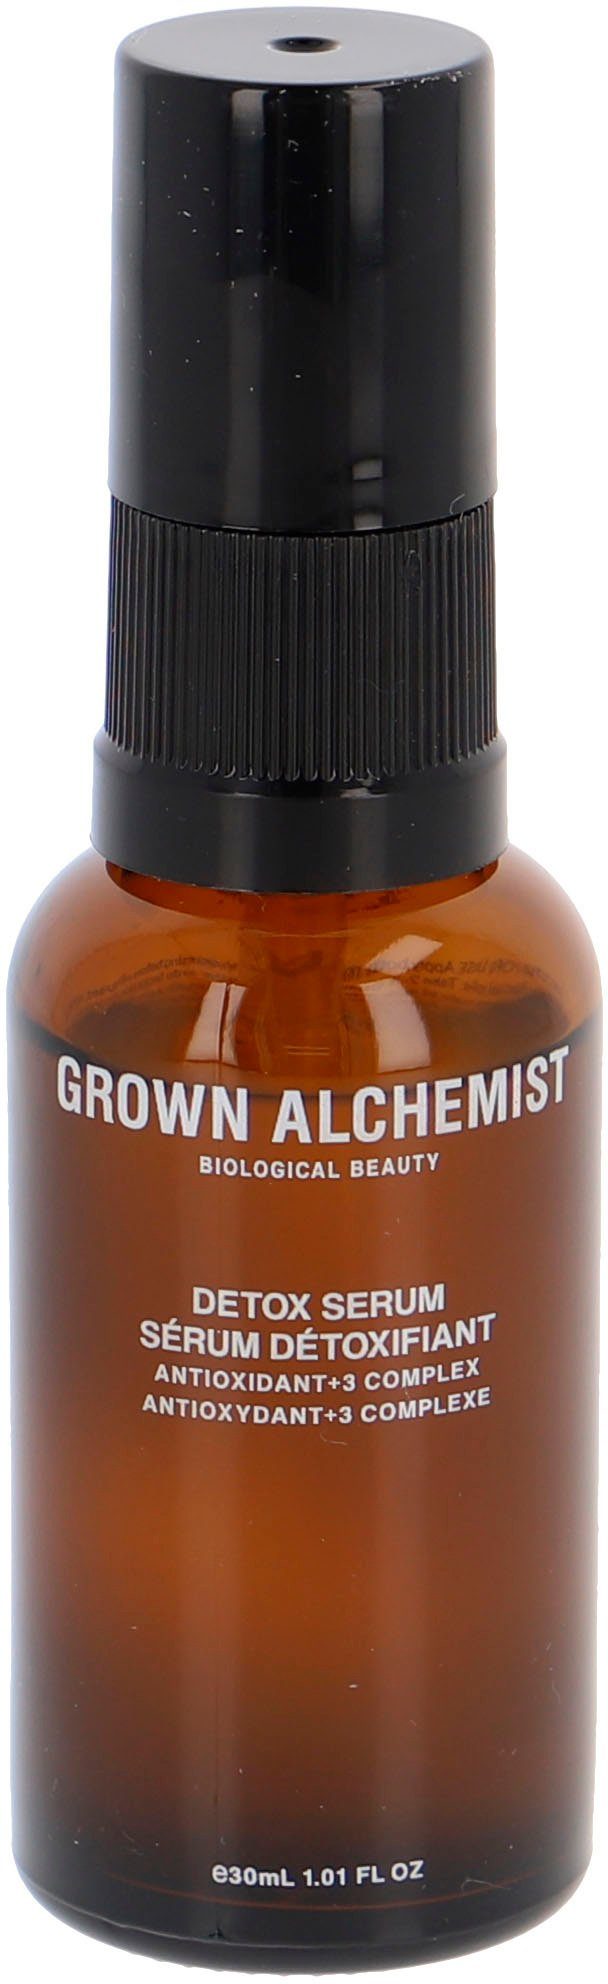 GROWN ALCHEMIST Gesichtsserum Detox Serum Antioxidant+ 3 Complex